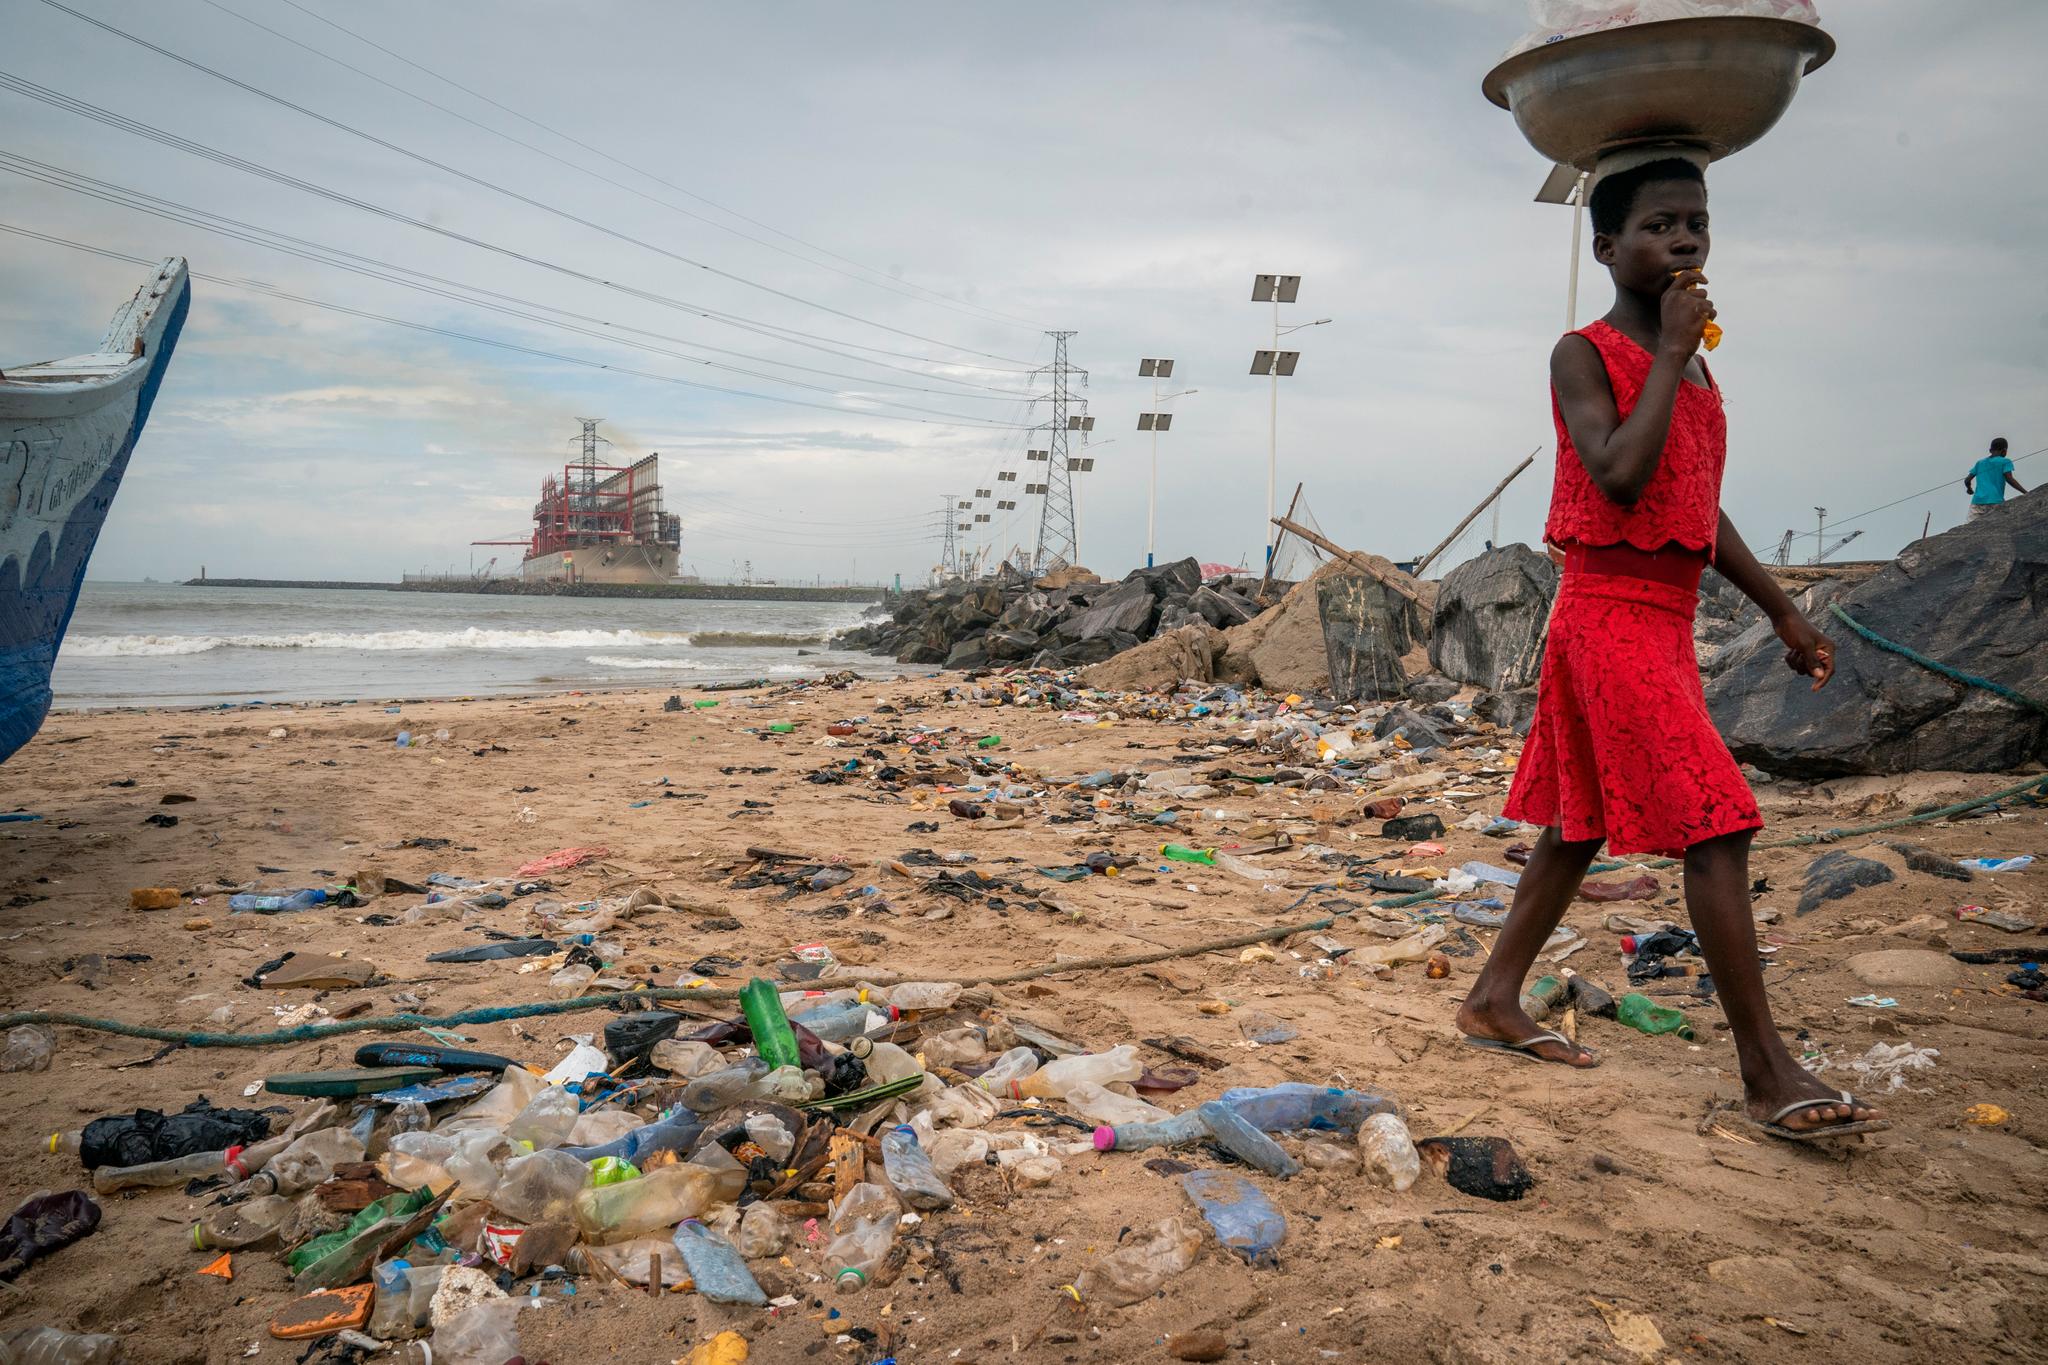 En jente går på en forsøplet strand i havnebyen Tema utenfor Accra i Ghana. Dårlig fiskeforvaltning og enorm forsøpling i havet og på land, hovedsakelig av plast, gjør at fiskerne tvinges til å ta lengre pauser fra fiskingen.